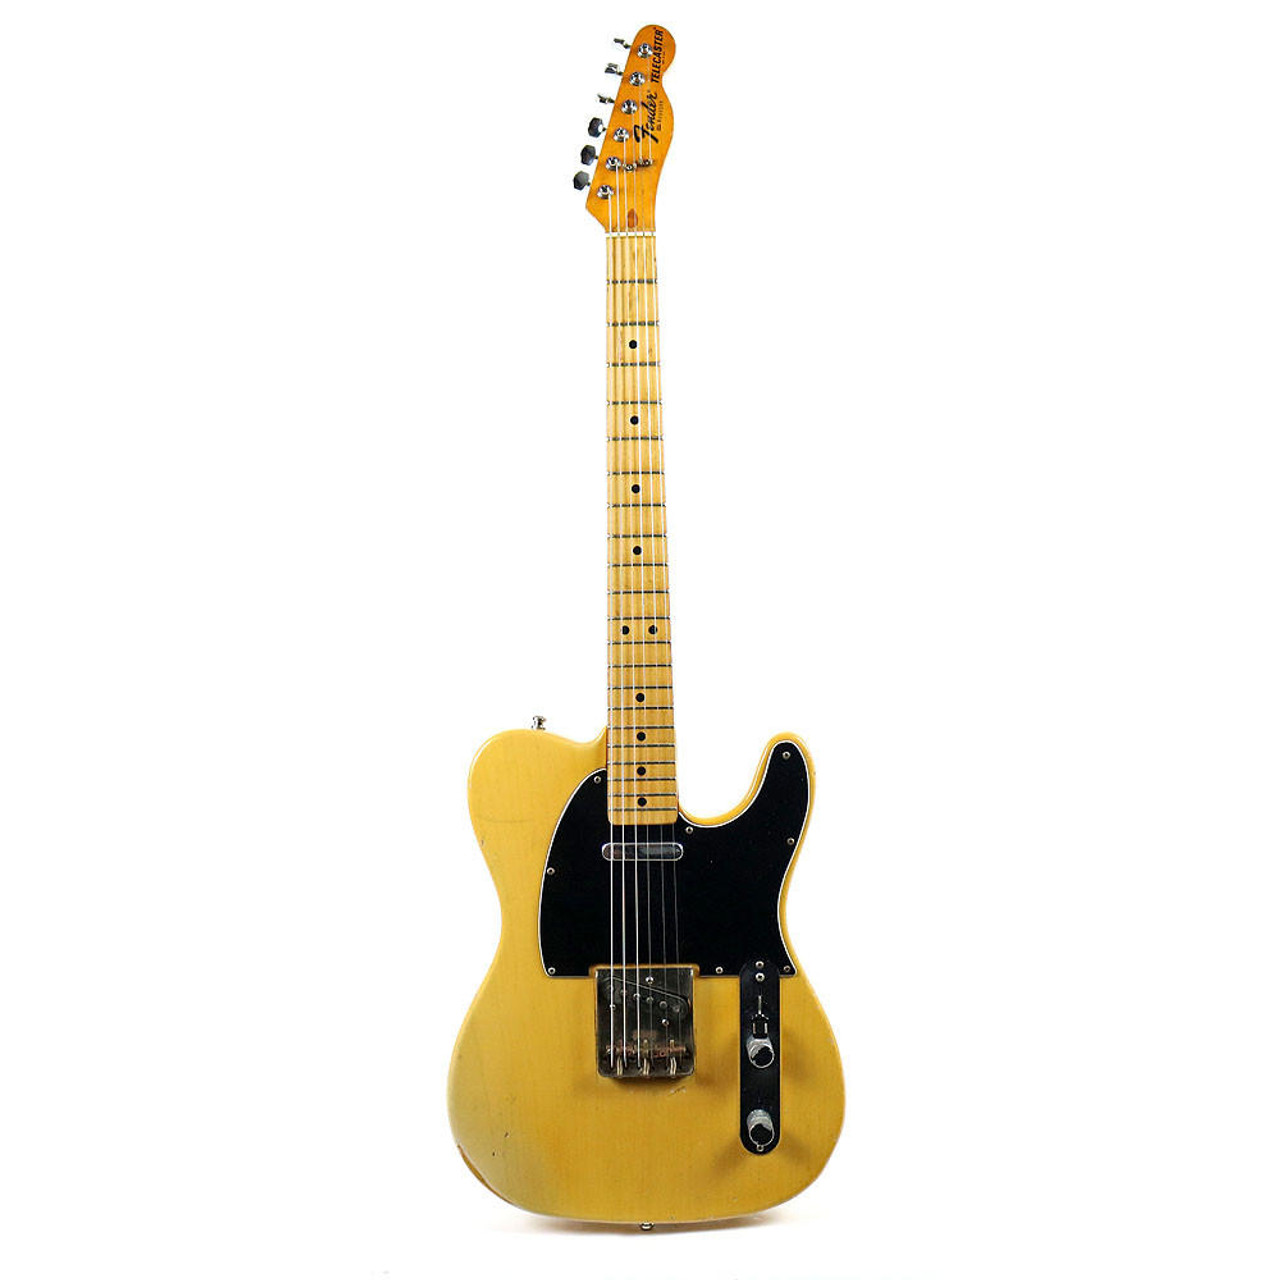 Vintage 1978 Fender Telecaster Electric Guitar Blonde Finish